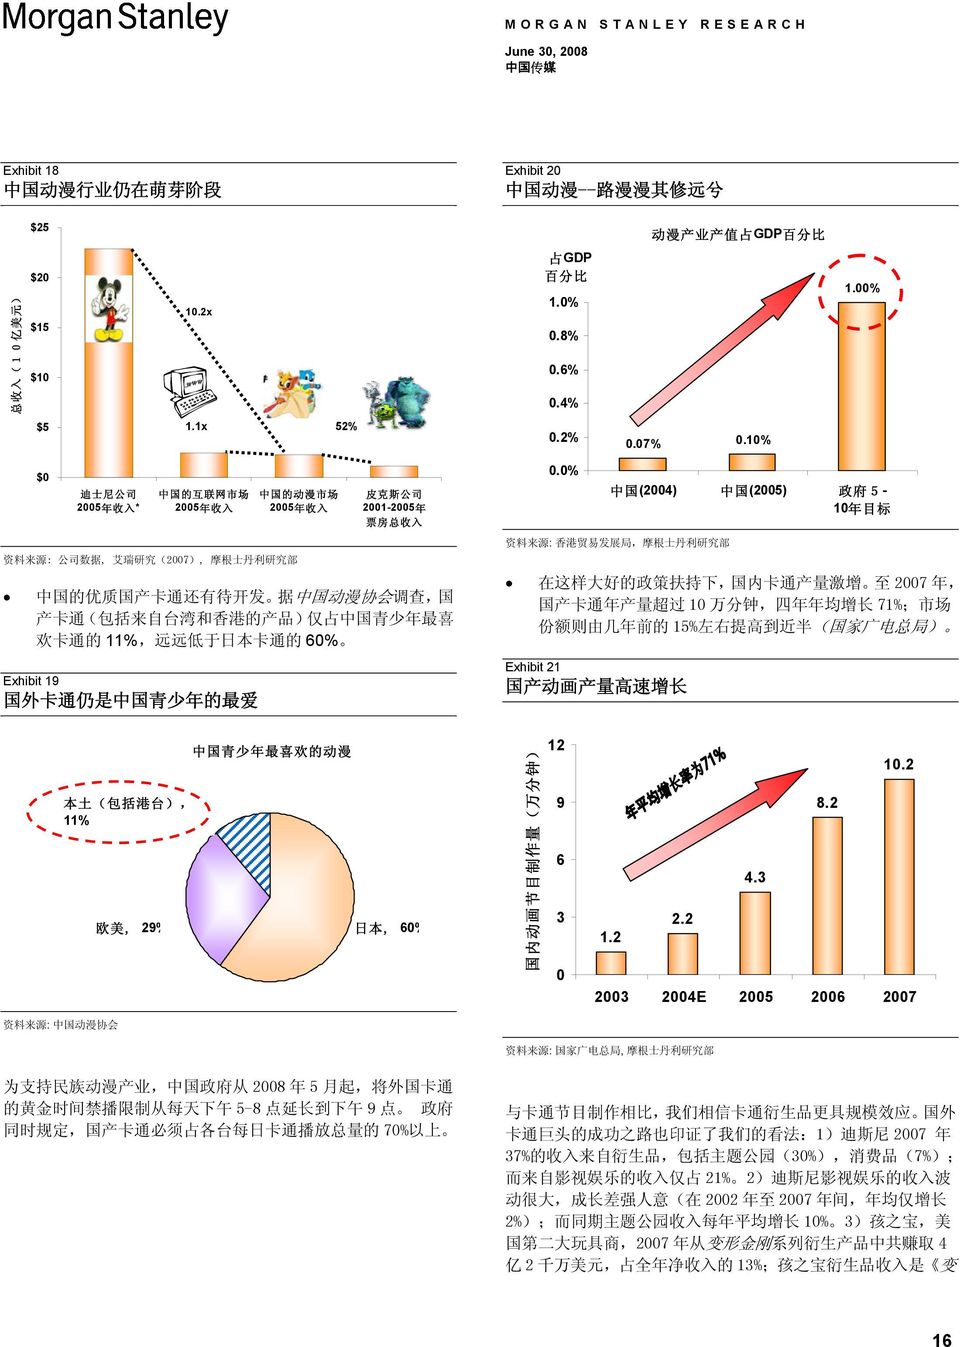 产 卡 通 ( 包 括 来 自 台 湾 和 香 港 的 产 品 ) 仅 占 中 国 青 少 年 最 喜 欢 卡 通 的 11%, 远 远 低 于 日 本 卡 通 的 6% Exhibit 19 国 外 卡 通 仍 是 中 国 青 少 年 的 最 爱.